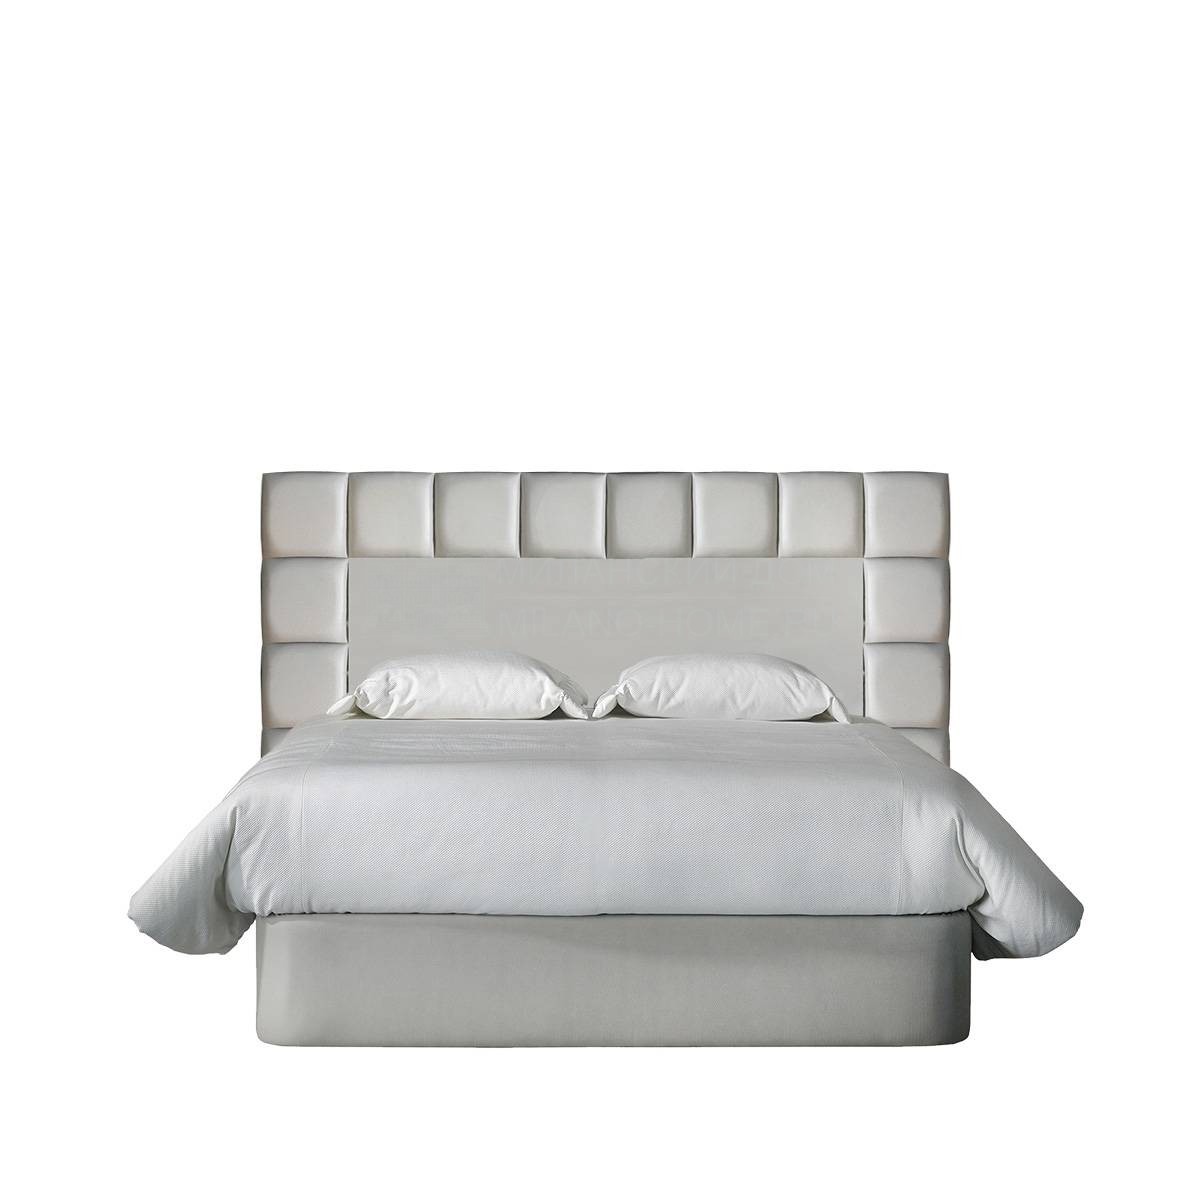 Кровать с мягким изголовьем Traveler / A0760/ A0765 из Испании фабрики COLECCION ALEXANDRA